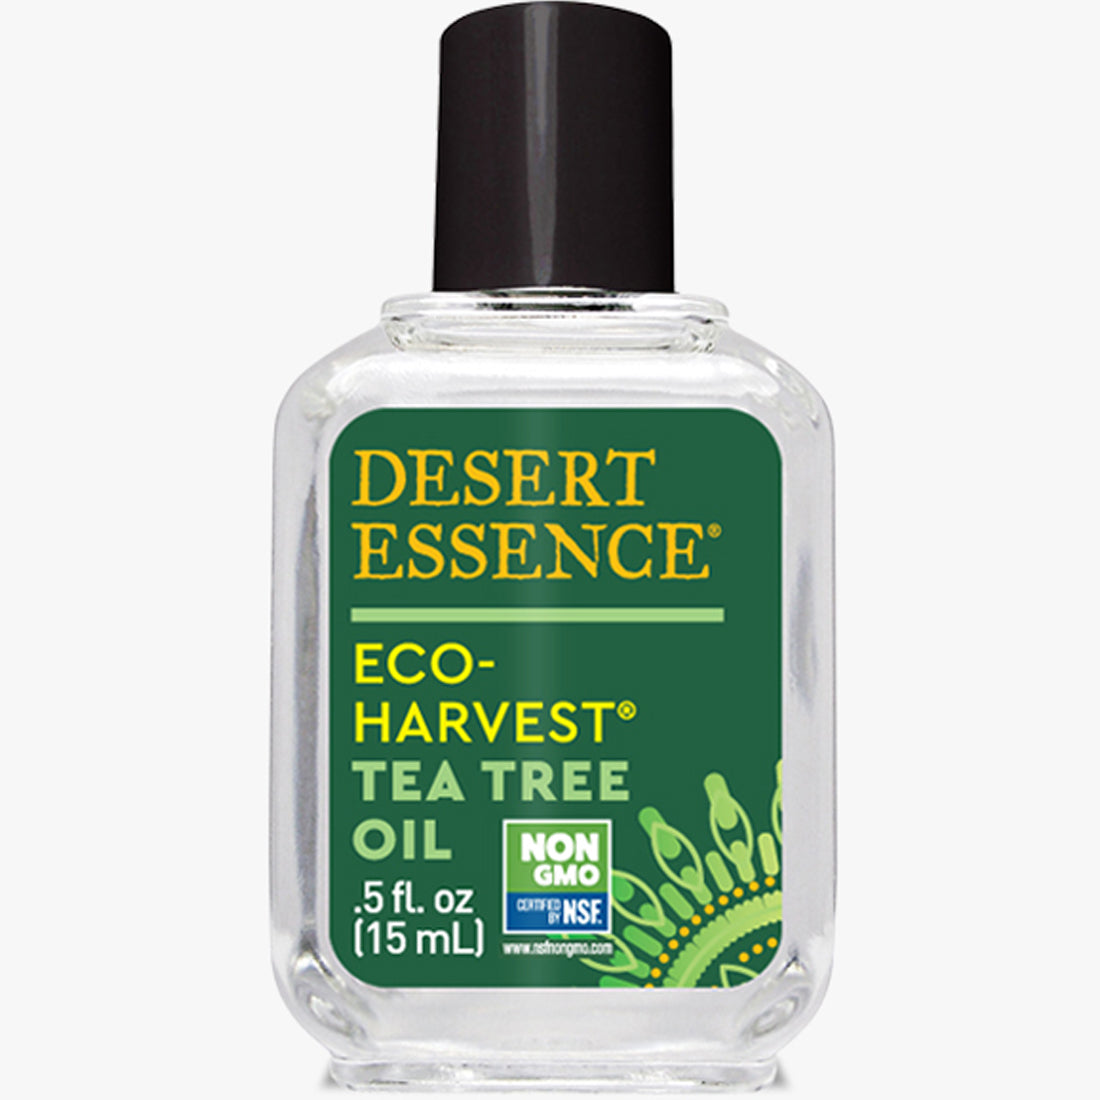 Desert Essence Tea Tree Oil Eco Harvest